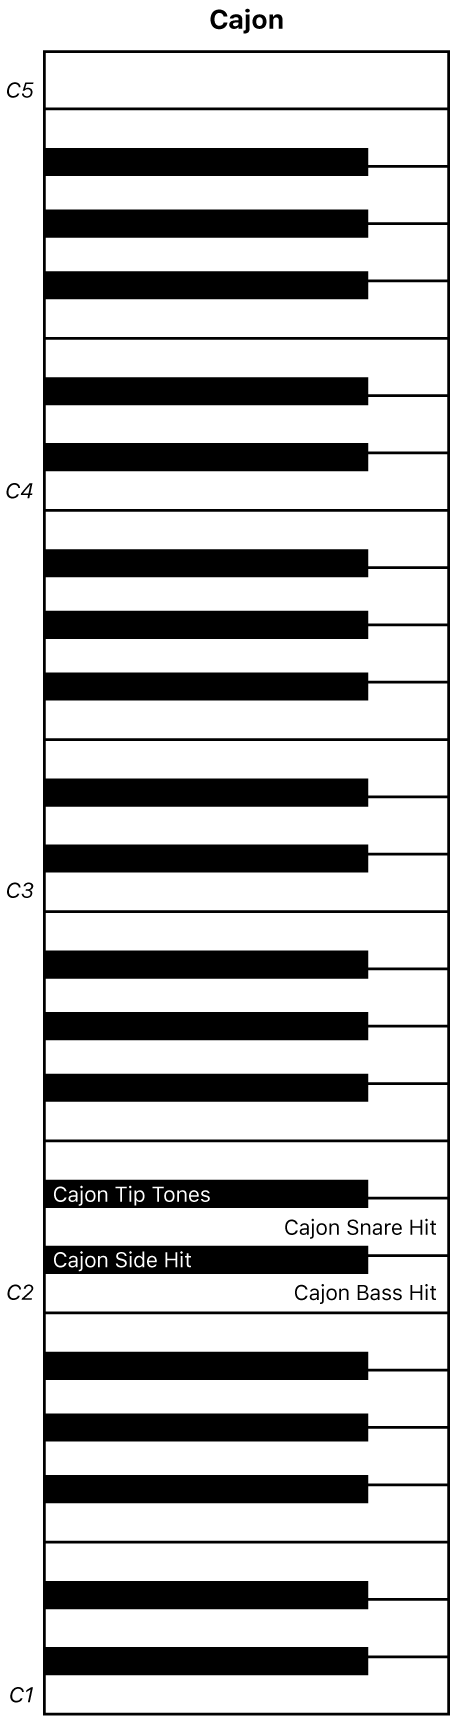 Abbildung. Keyboard-Zuweisung für Cajon-Performance